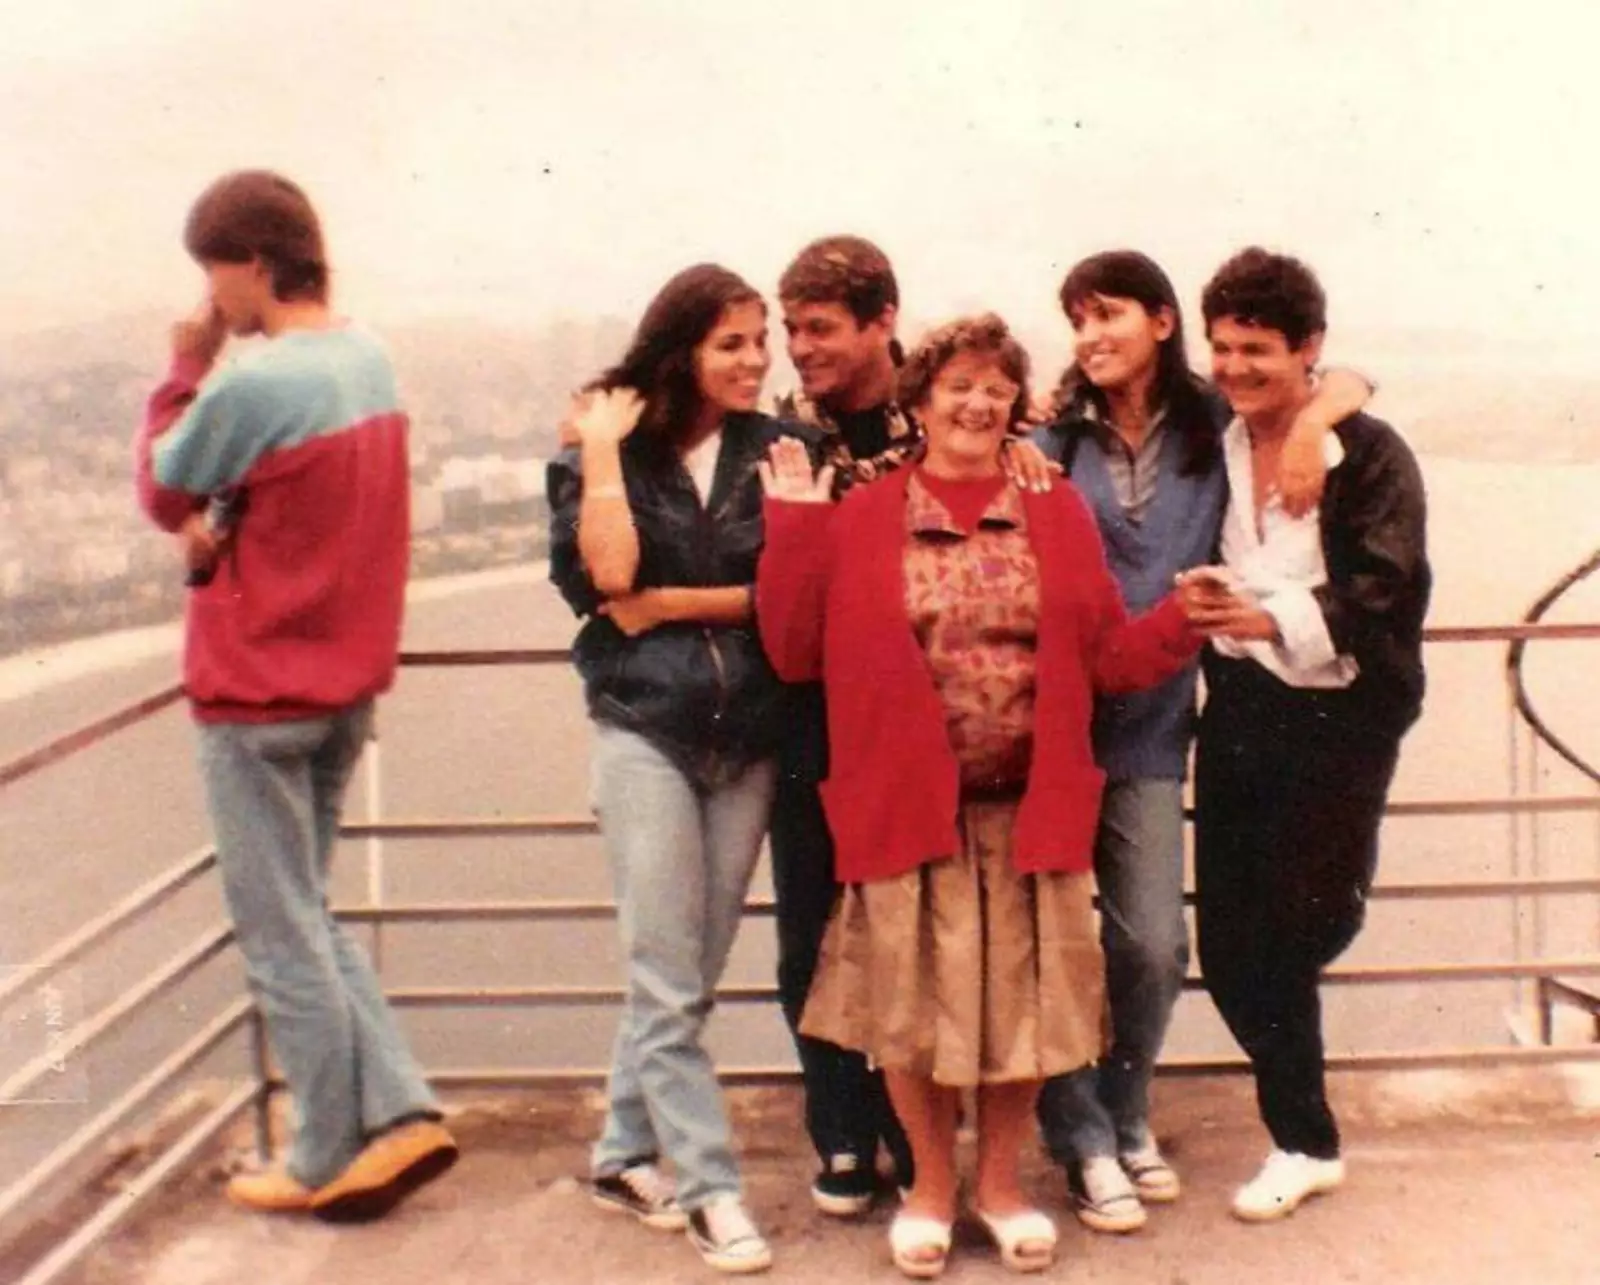 «Мой двоюродный брат был на семейном фото своей будущей жены (парень слева) в поездке в Рио-де-Жанейро. 7 лет до их встречи».